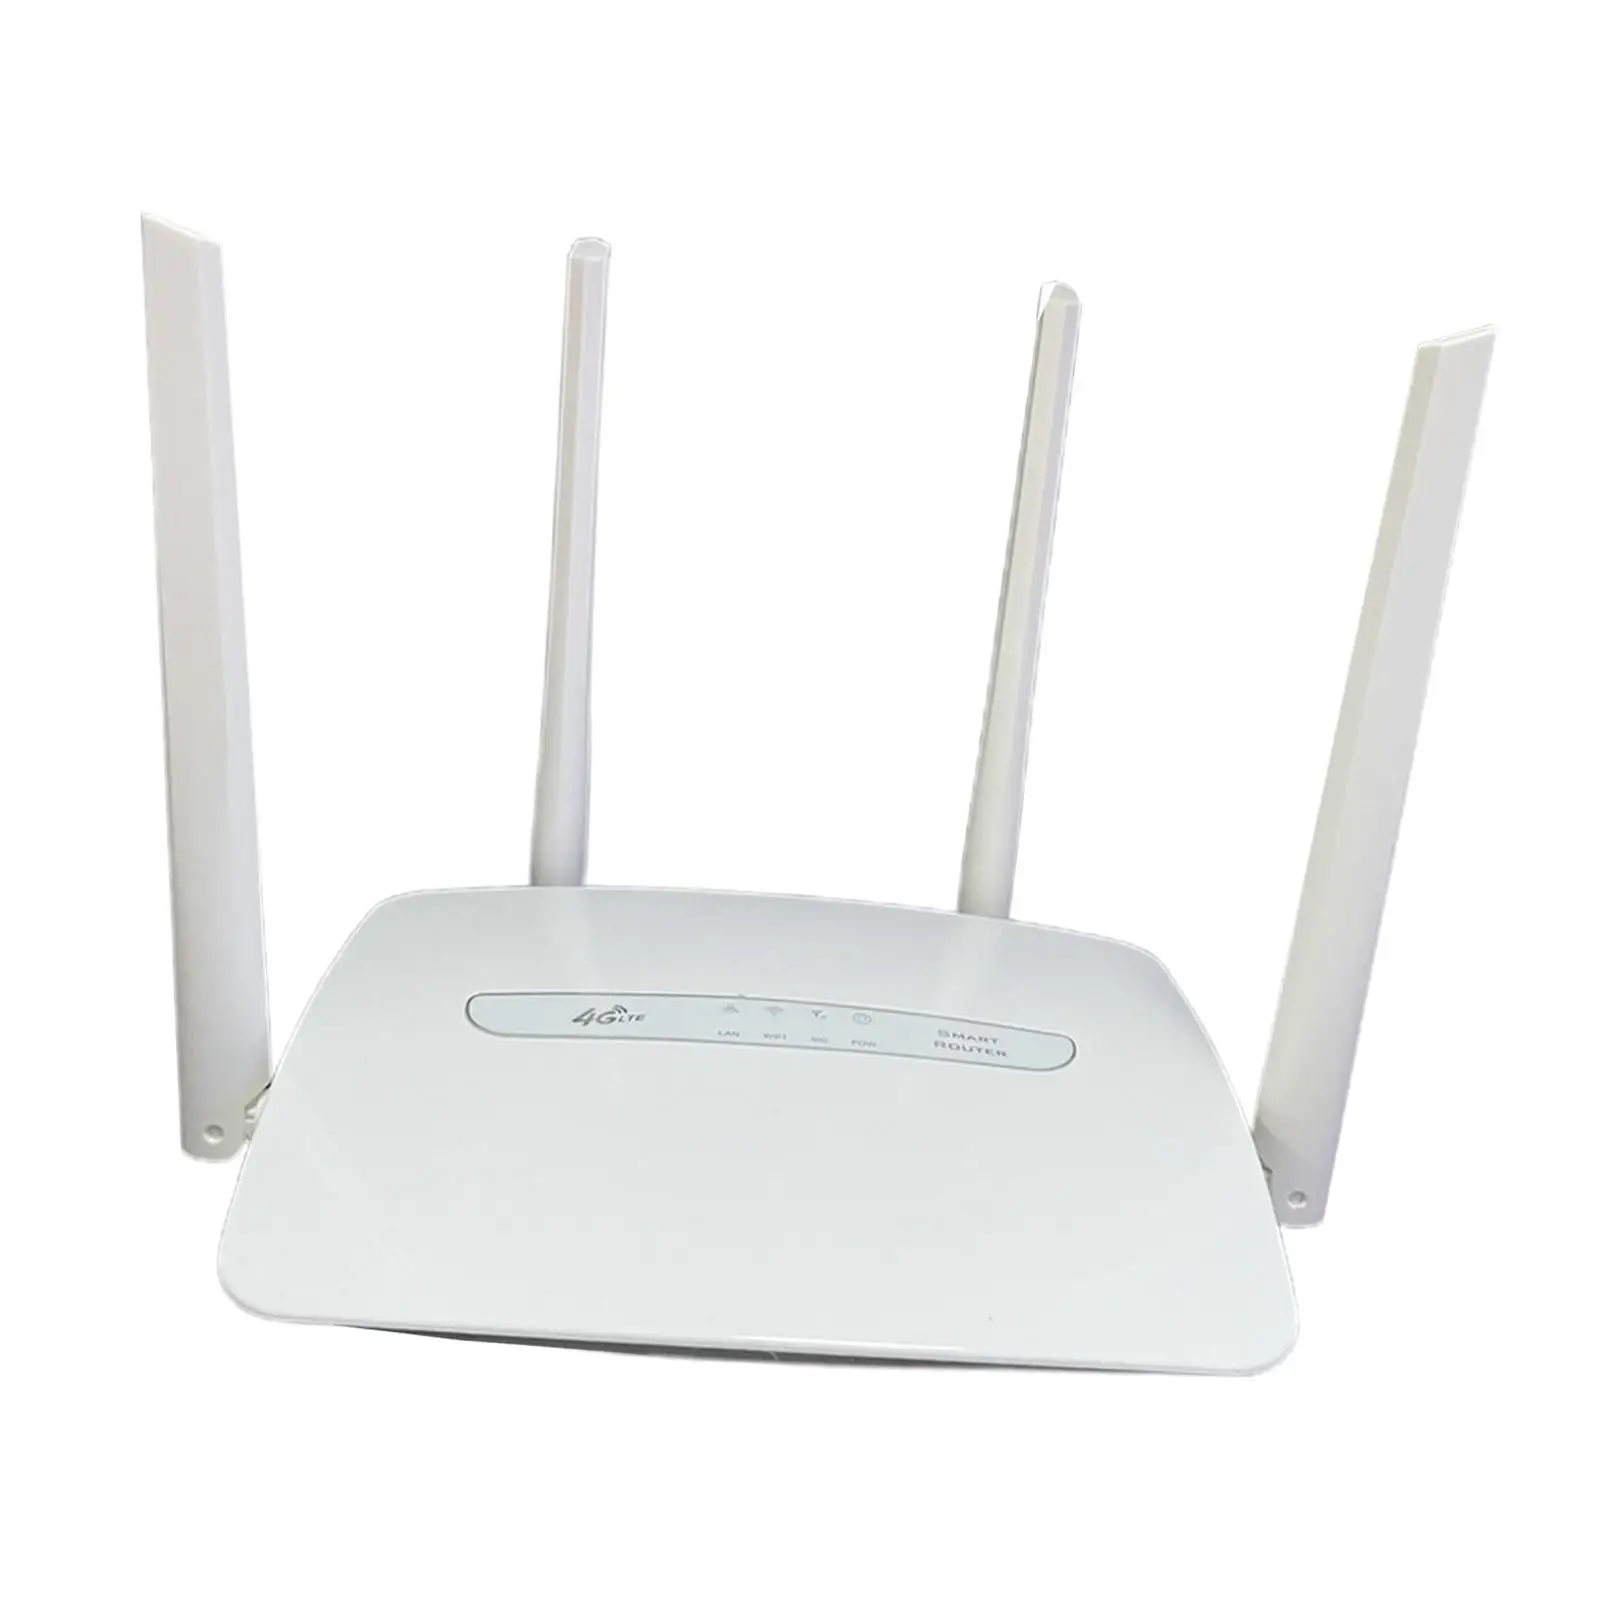 4G LTE WiFi Wireless Router 4 Hotspoturi Mobile pentru acasă4